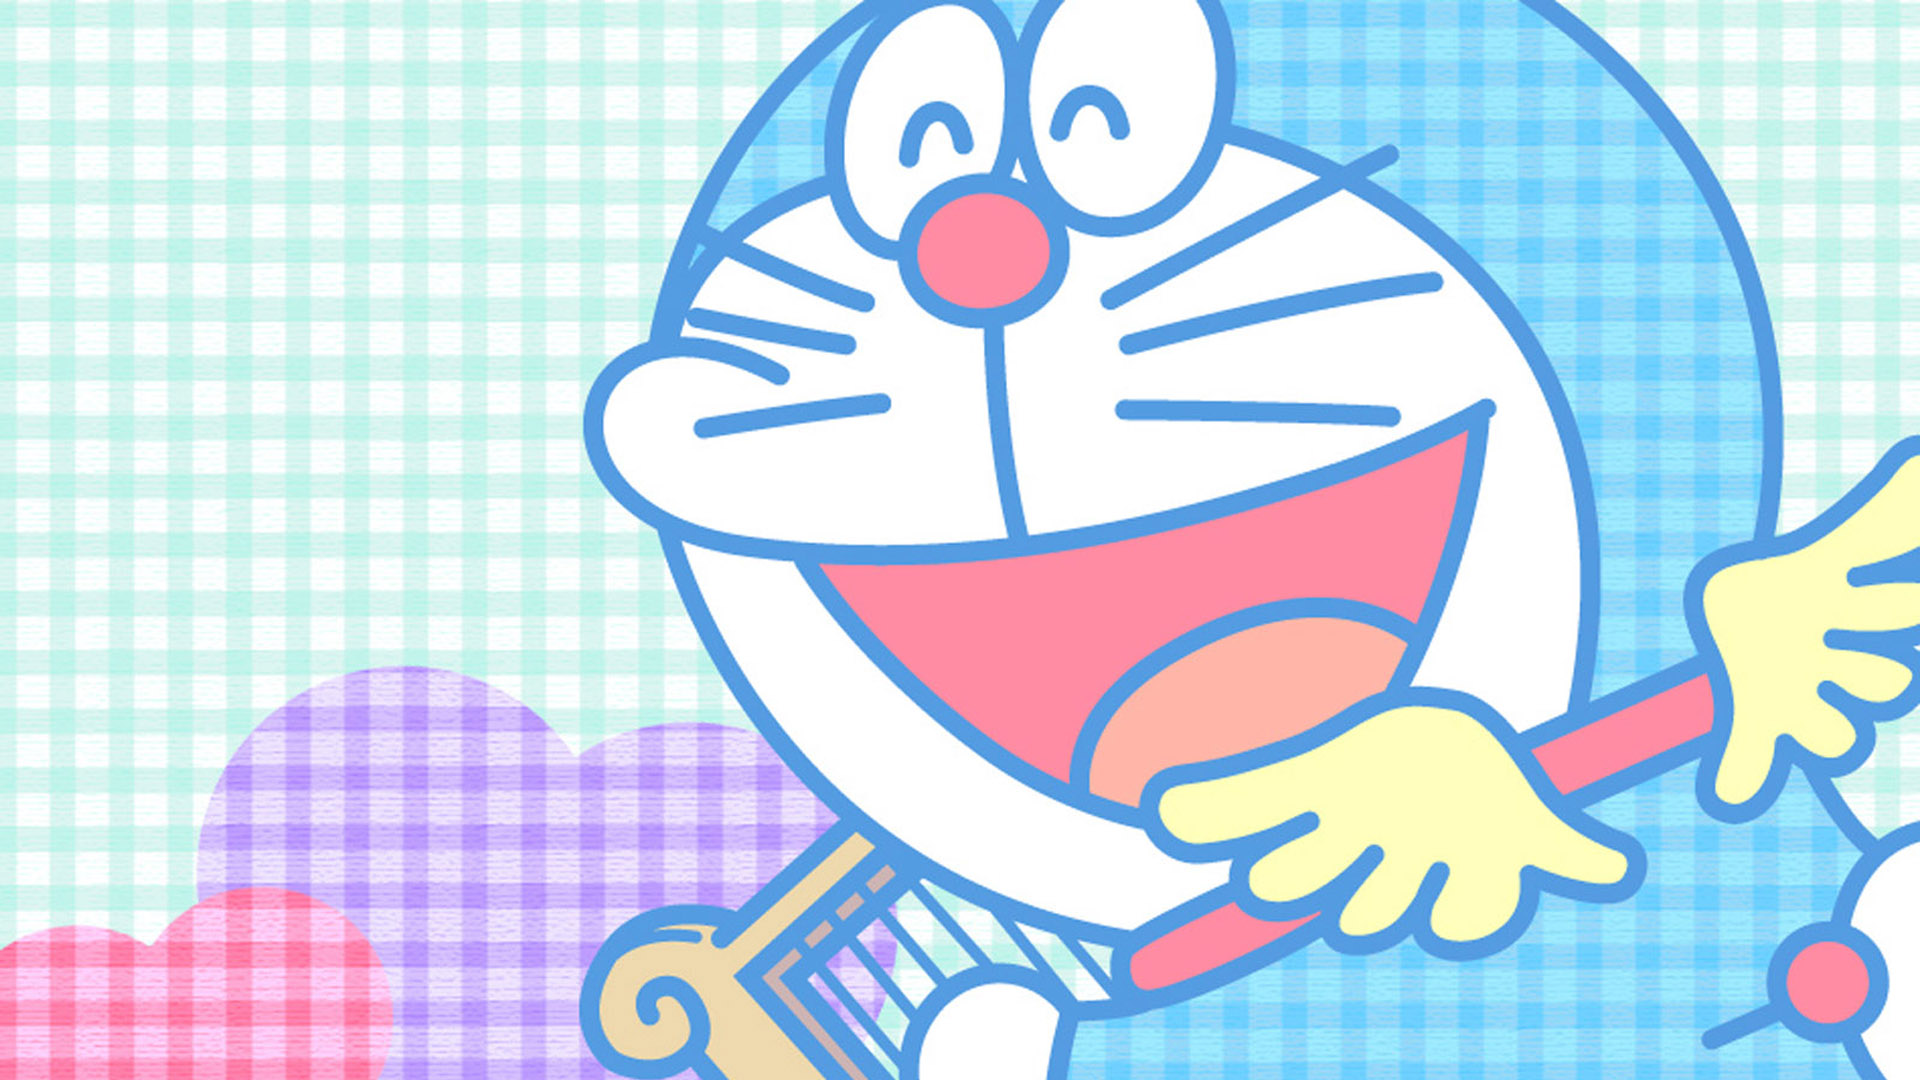 Hãy cập nhật bộ sưu tập hình nền cho máy tính của mình với wallpaper Doraemon phong cách tuyệt đẹp. Bạn sẽ được tận hưởng những bức tranh sống động và chuẩn đến từng chi tiết. Hãy tải ngay những bức tranh nền Doraemon miễn phí với độ phân giải full HD.